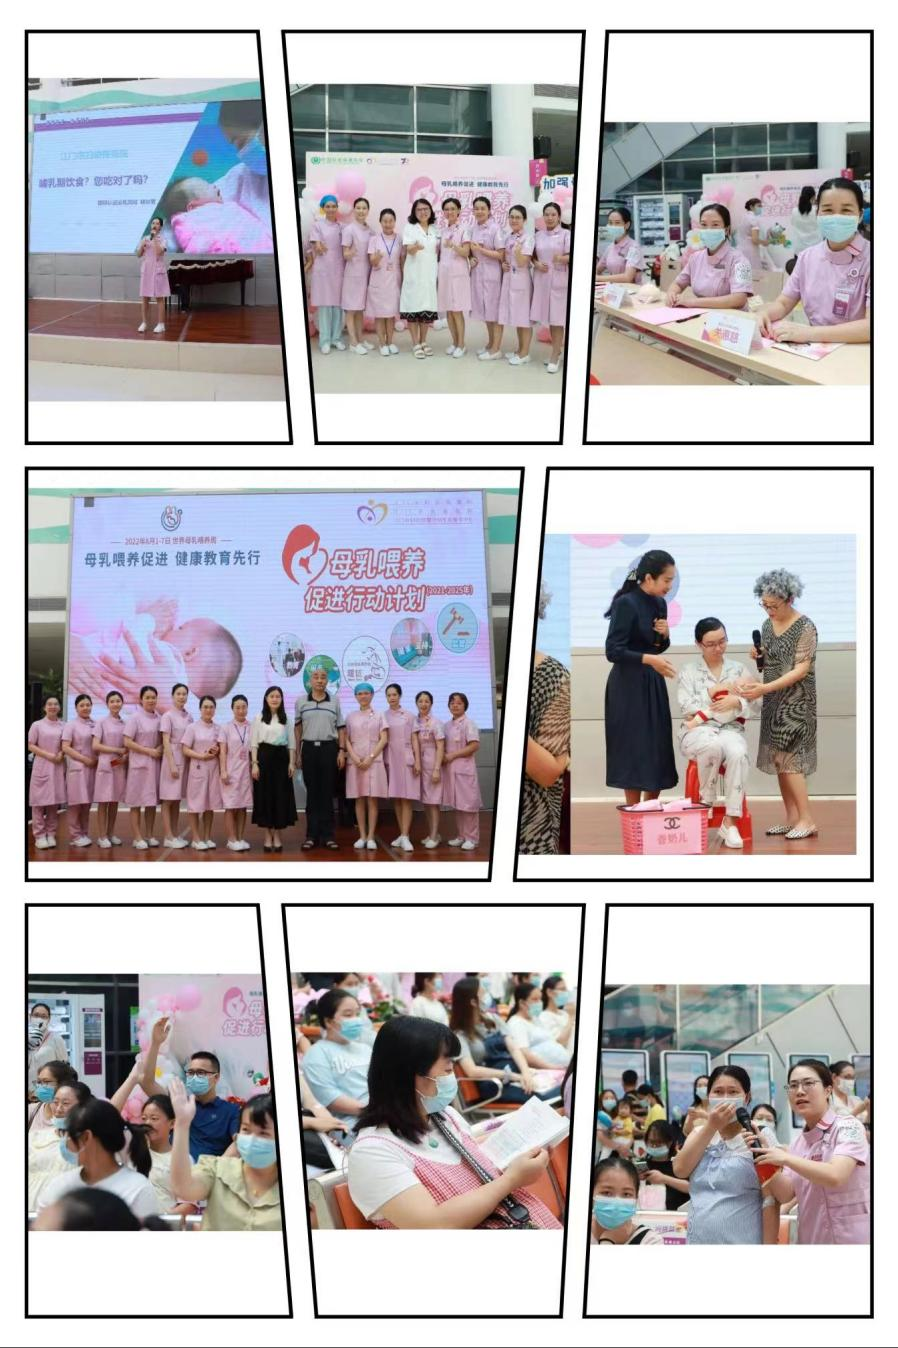 母乳喂养周系列活动——江门市妇幼保健院成功举办母乳喂养知识竞赛